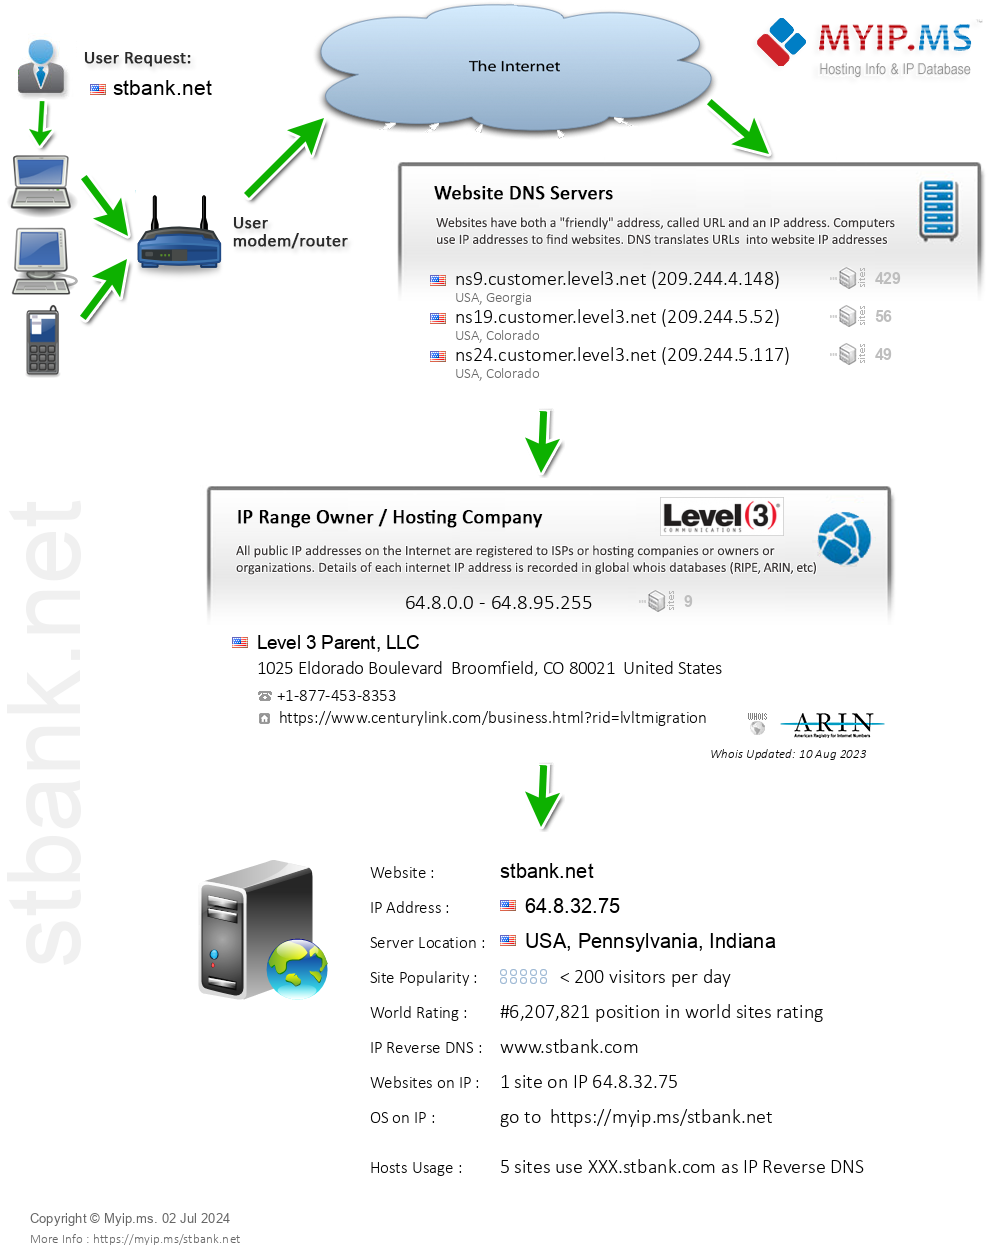 Stbank.net - Website Hosting Visual IP Diagram